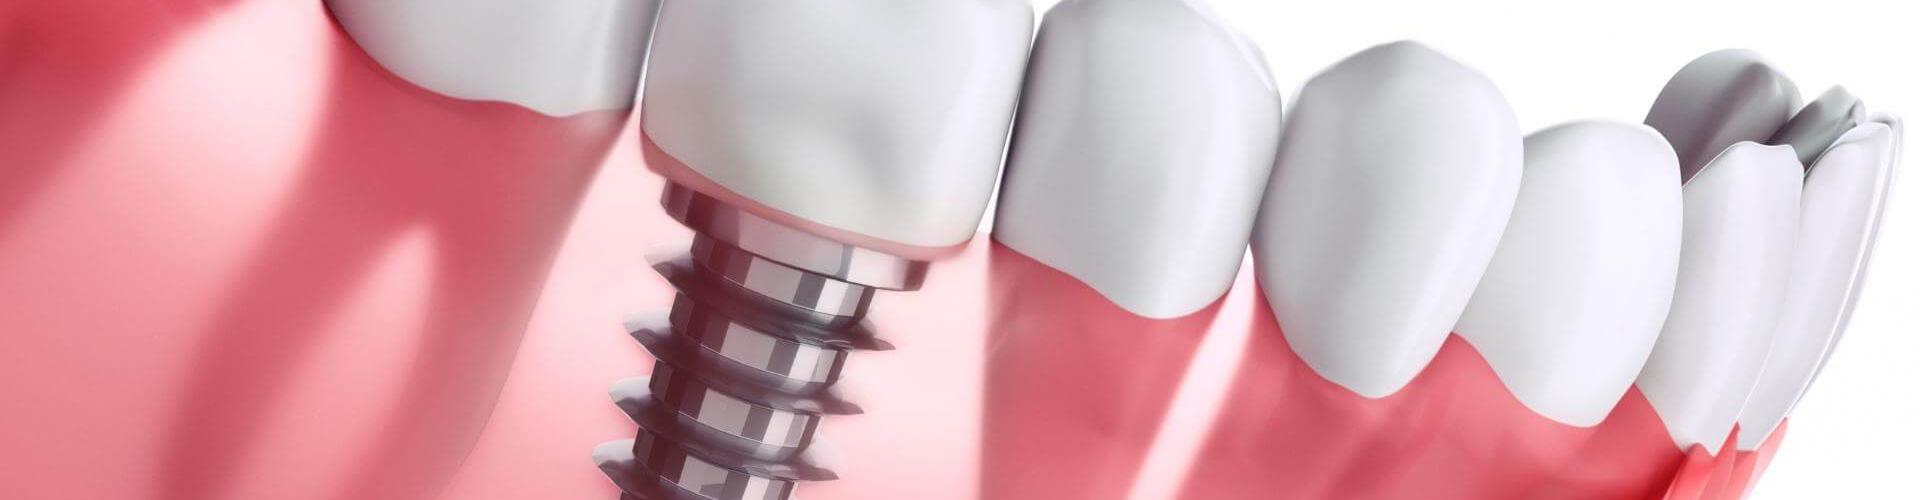 impianti dentali: impianto a carico immediato